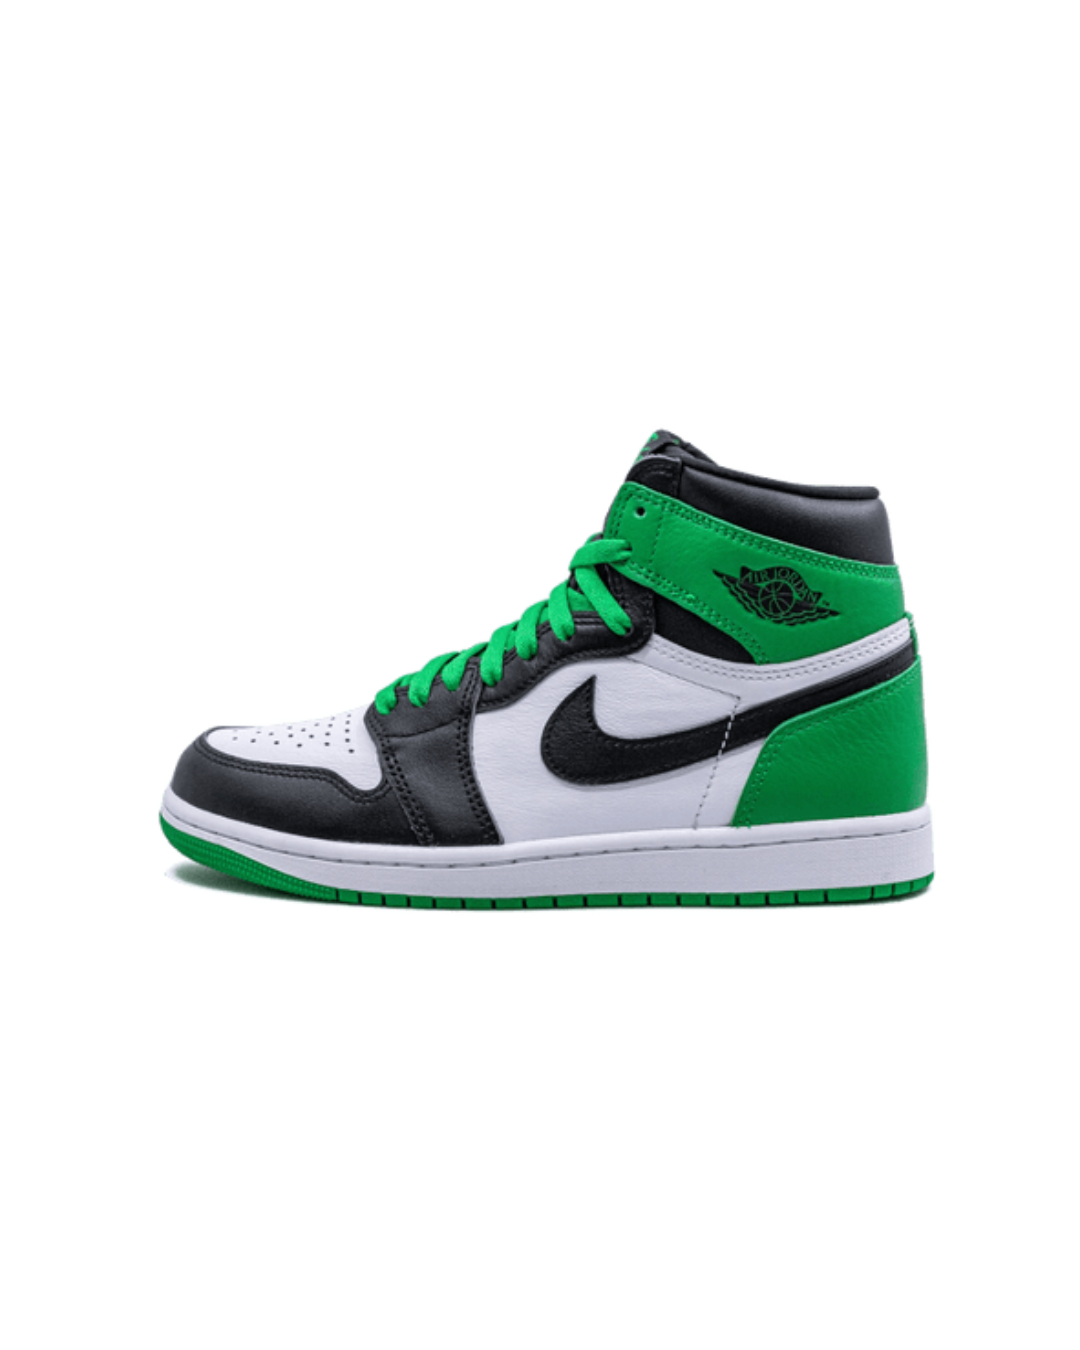 SIZE: De Air Jordan 1 Retro High OG Lucky Green valt op maat, dus we raden aan om je normale maat te bestellen!